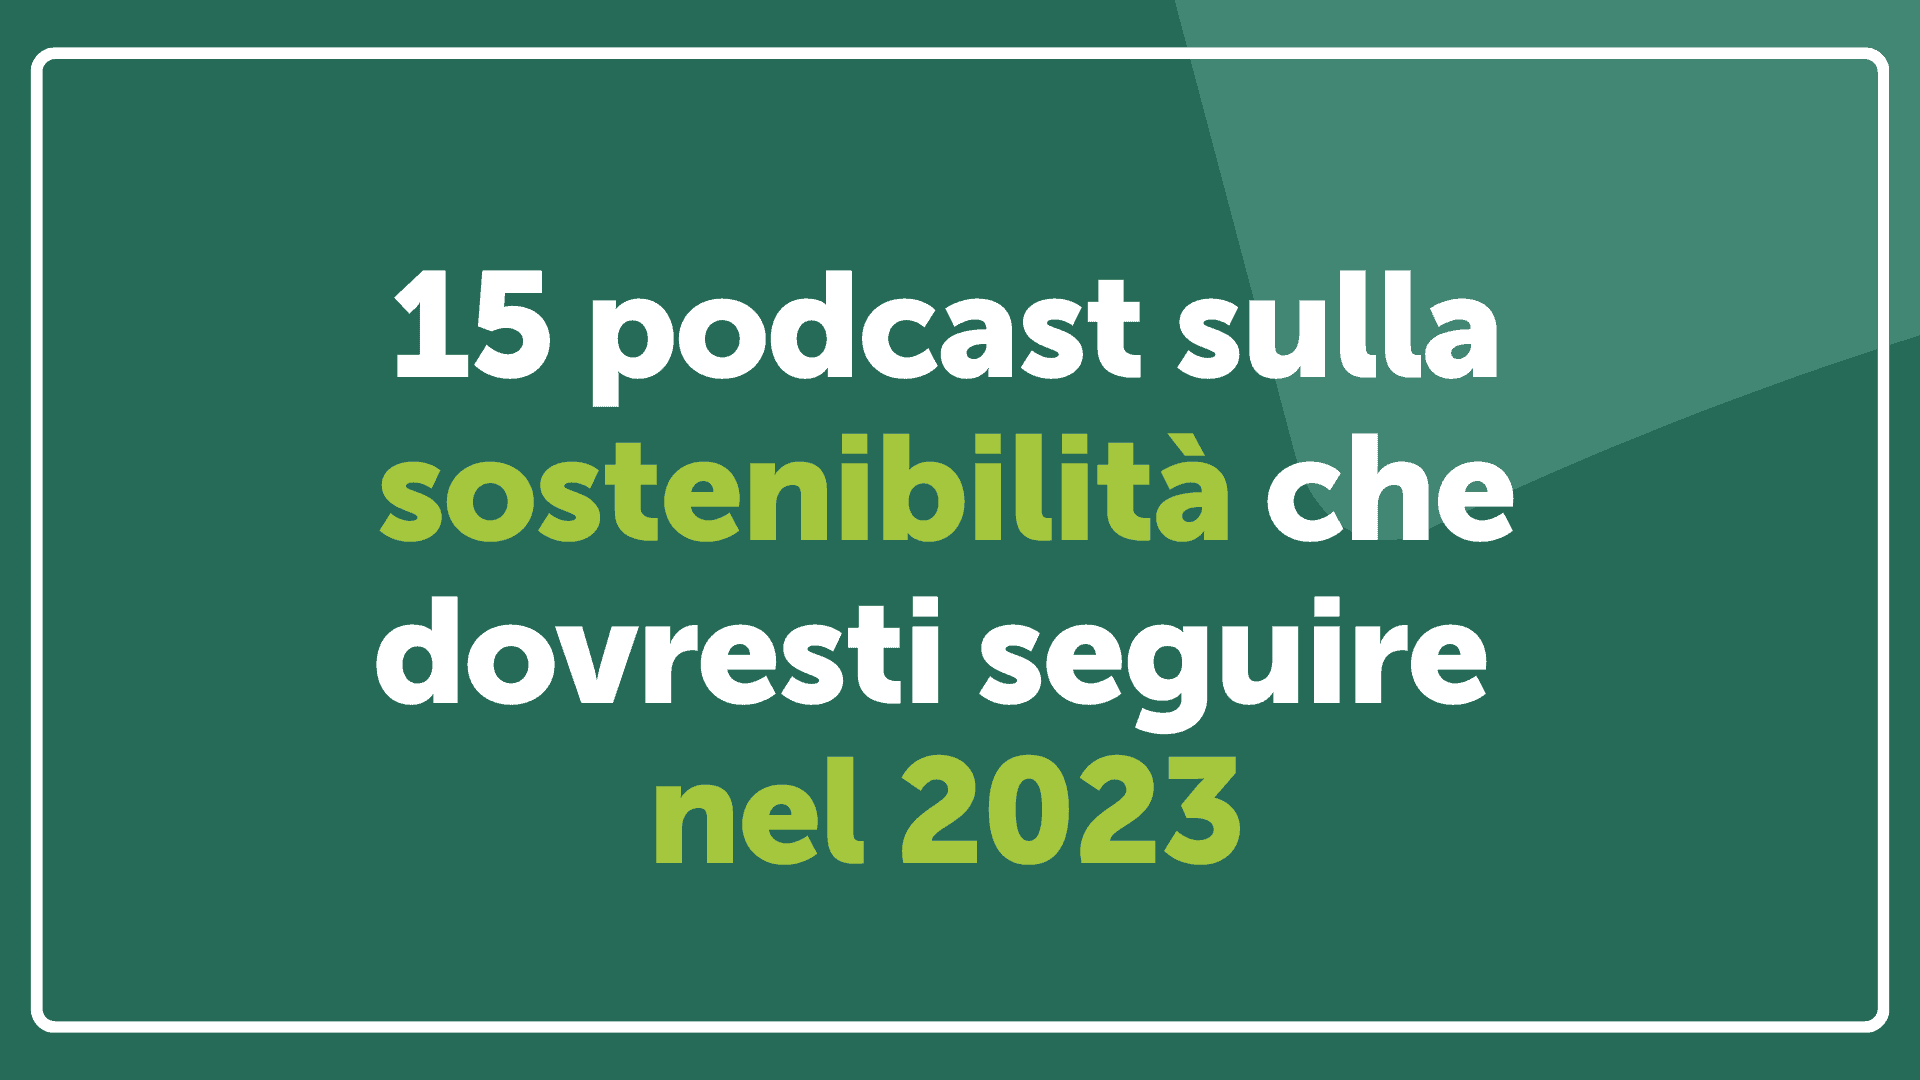 15 podcast sulla sostenibilità che dovresti seguire nel 2023